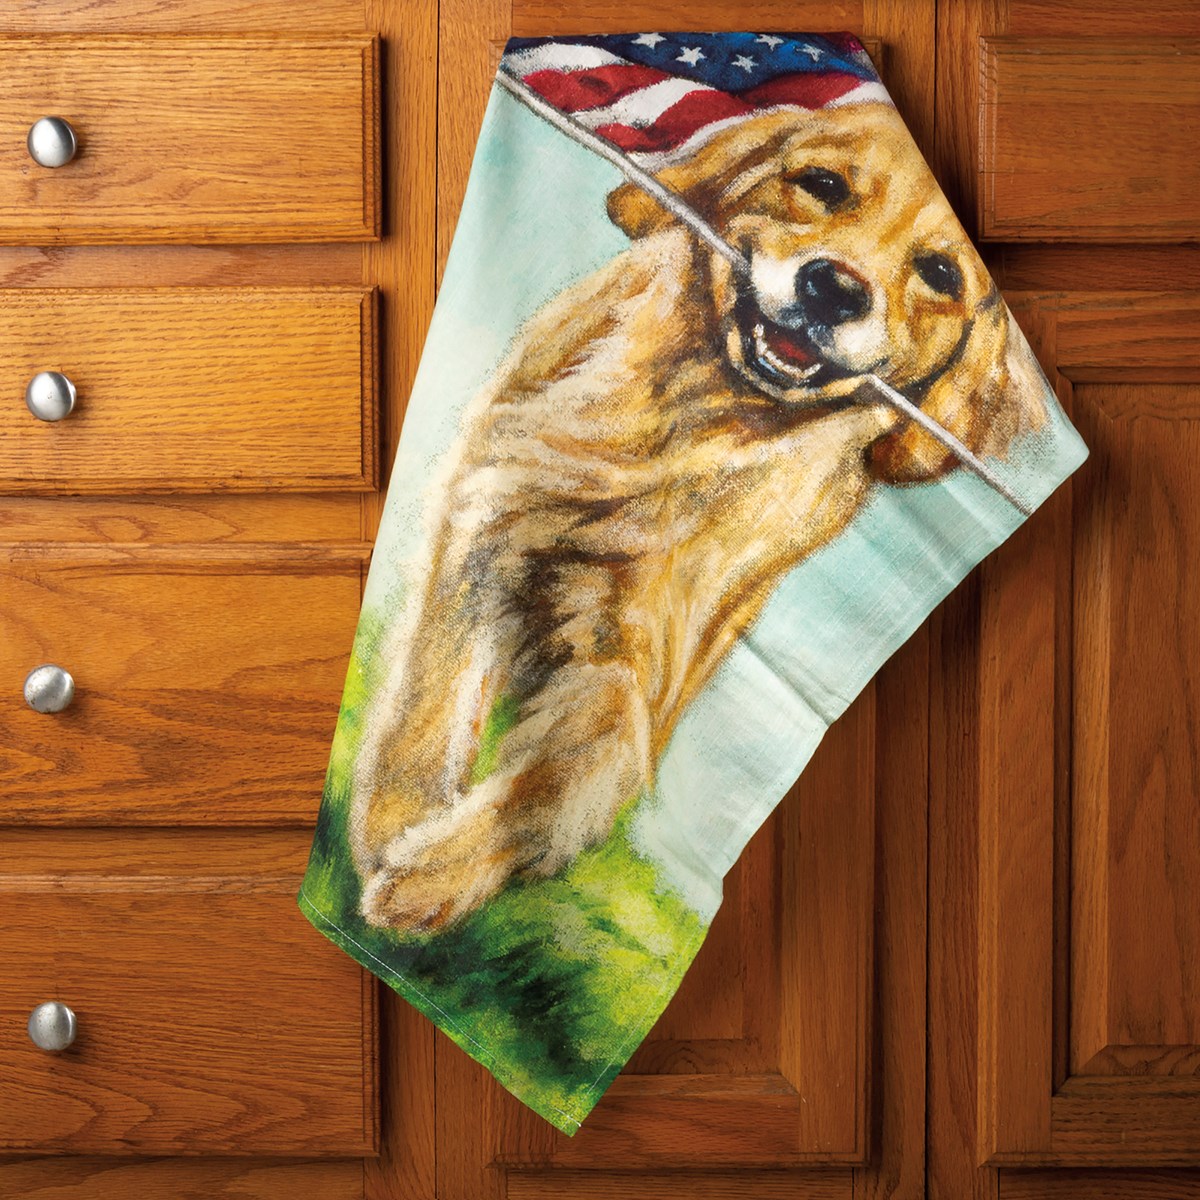 Patriotic Running Dog Kitchen Towel - Cotton